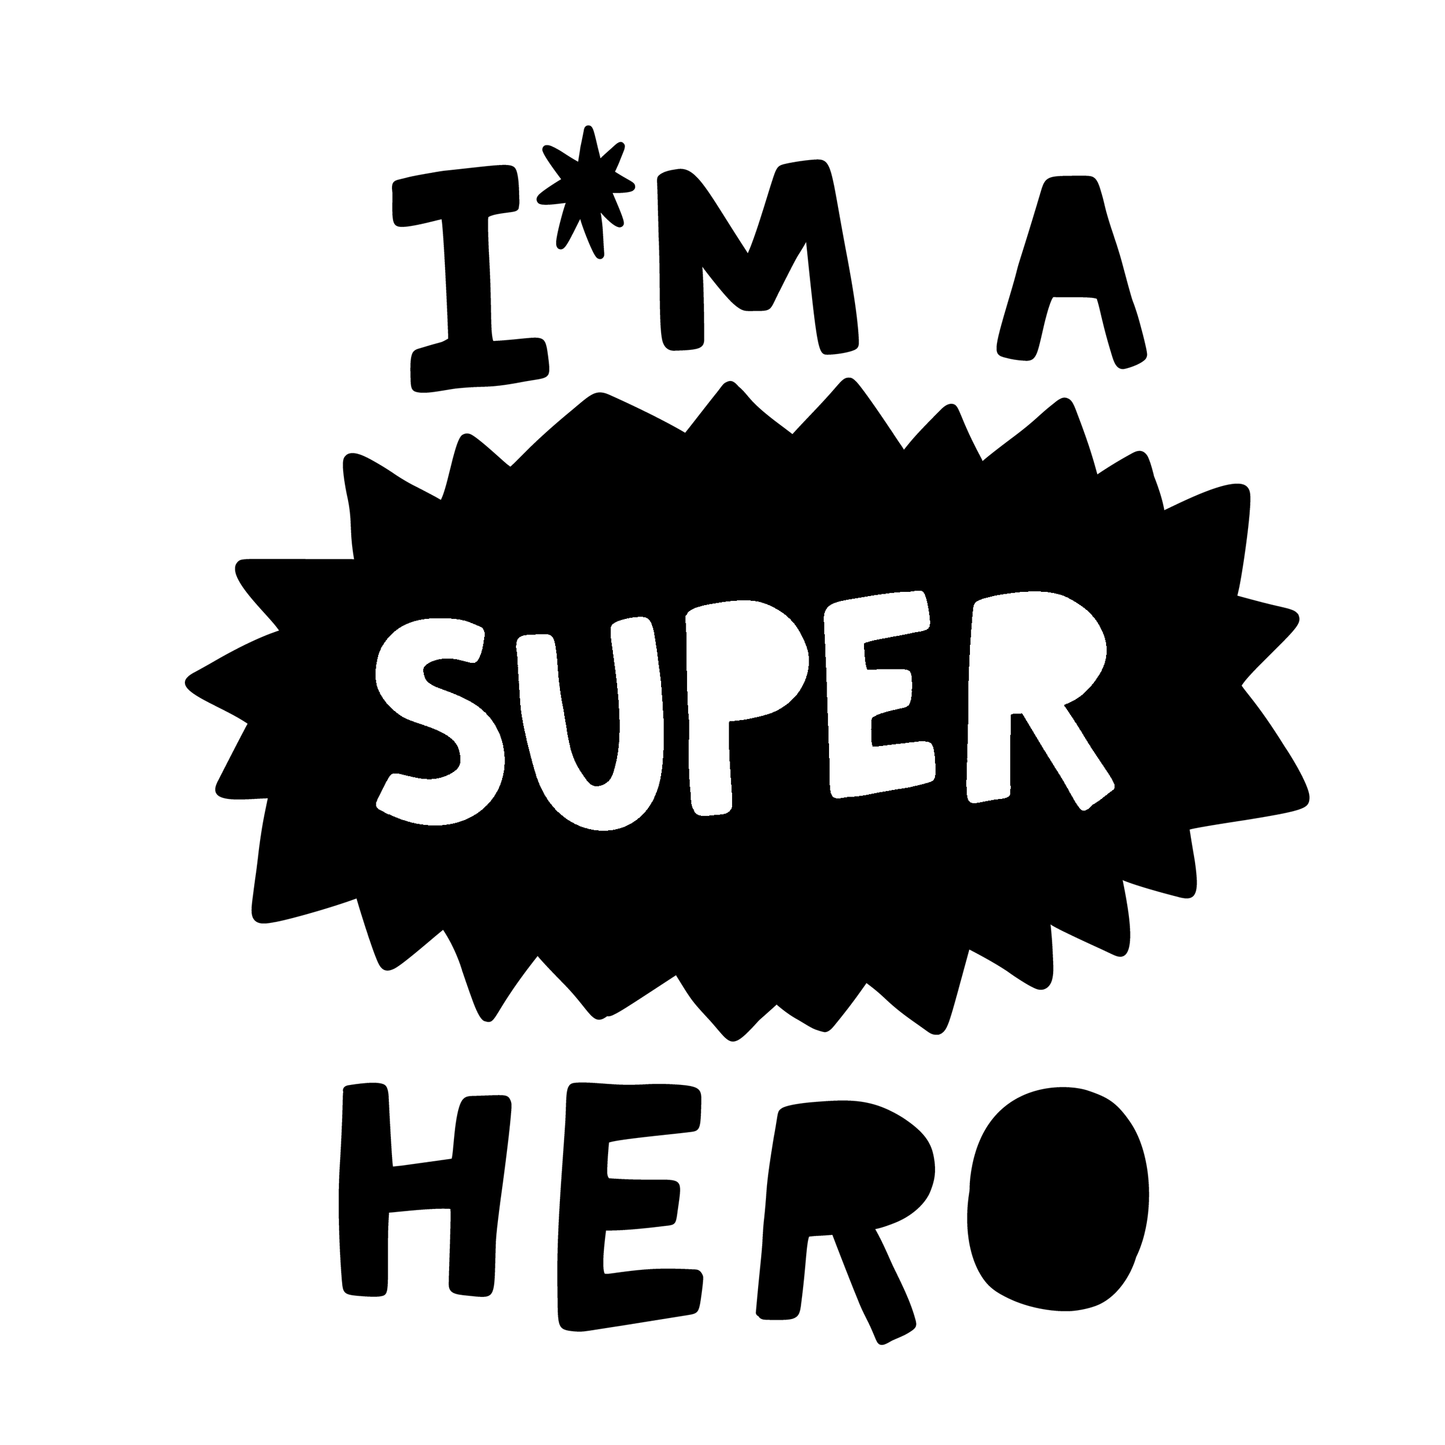 Super Hero Short Sleeves Organic Kids Tee Shirt